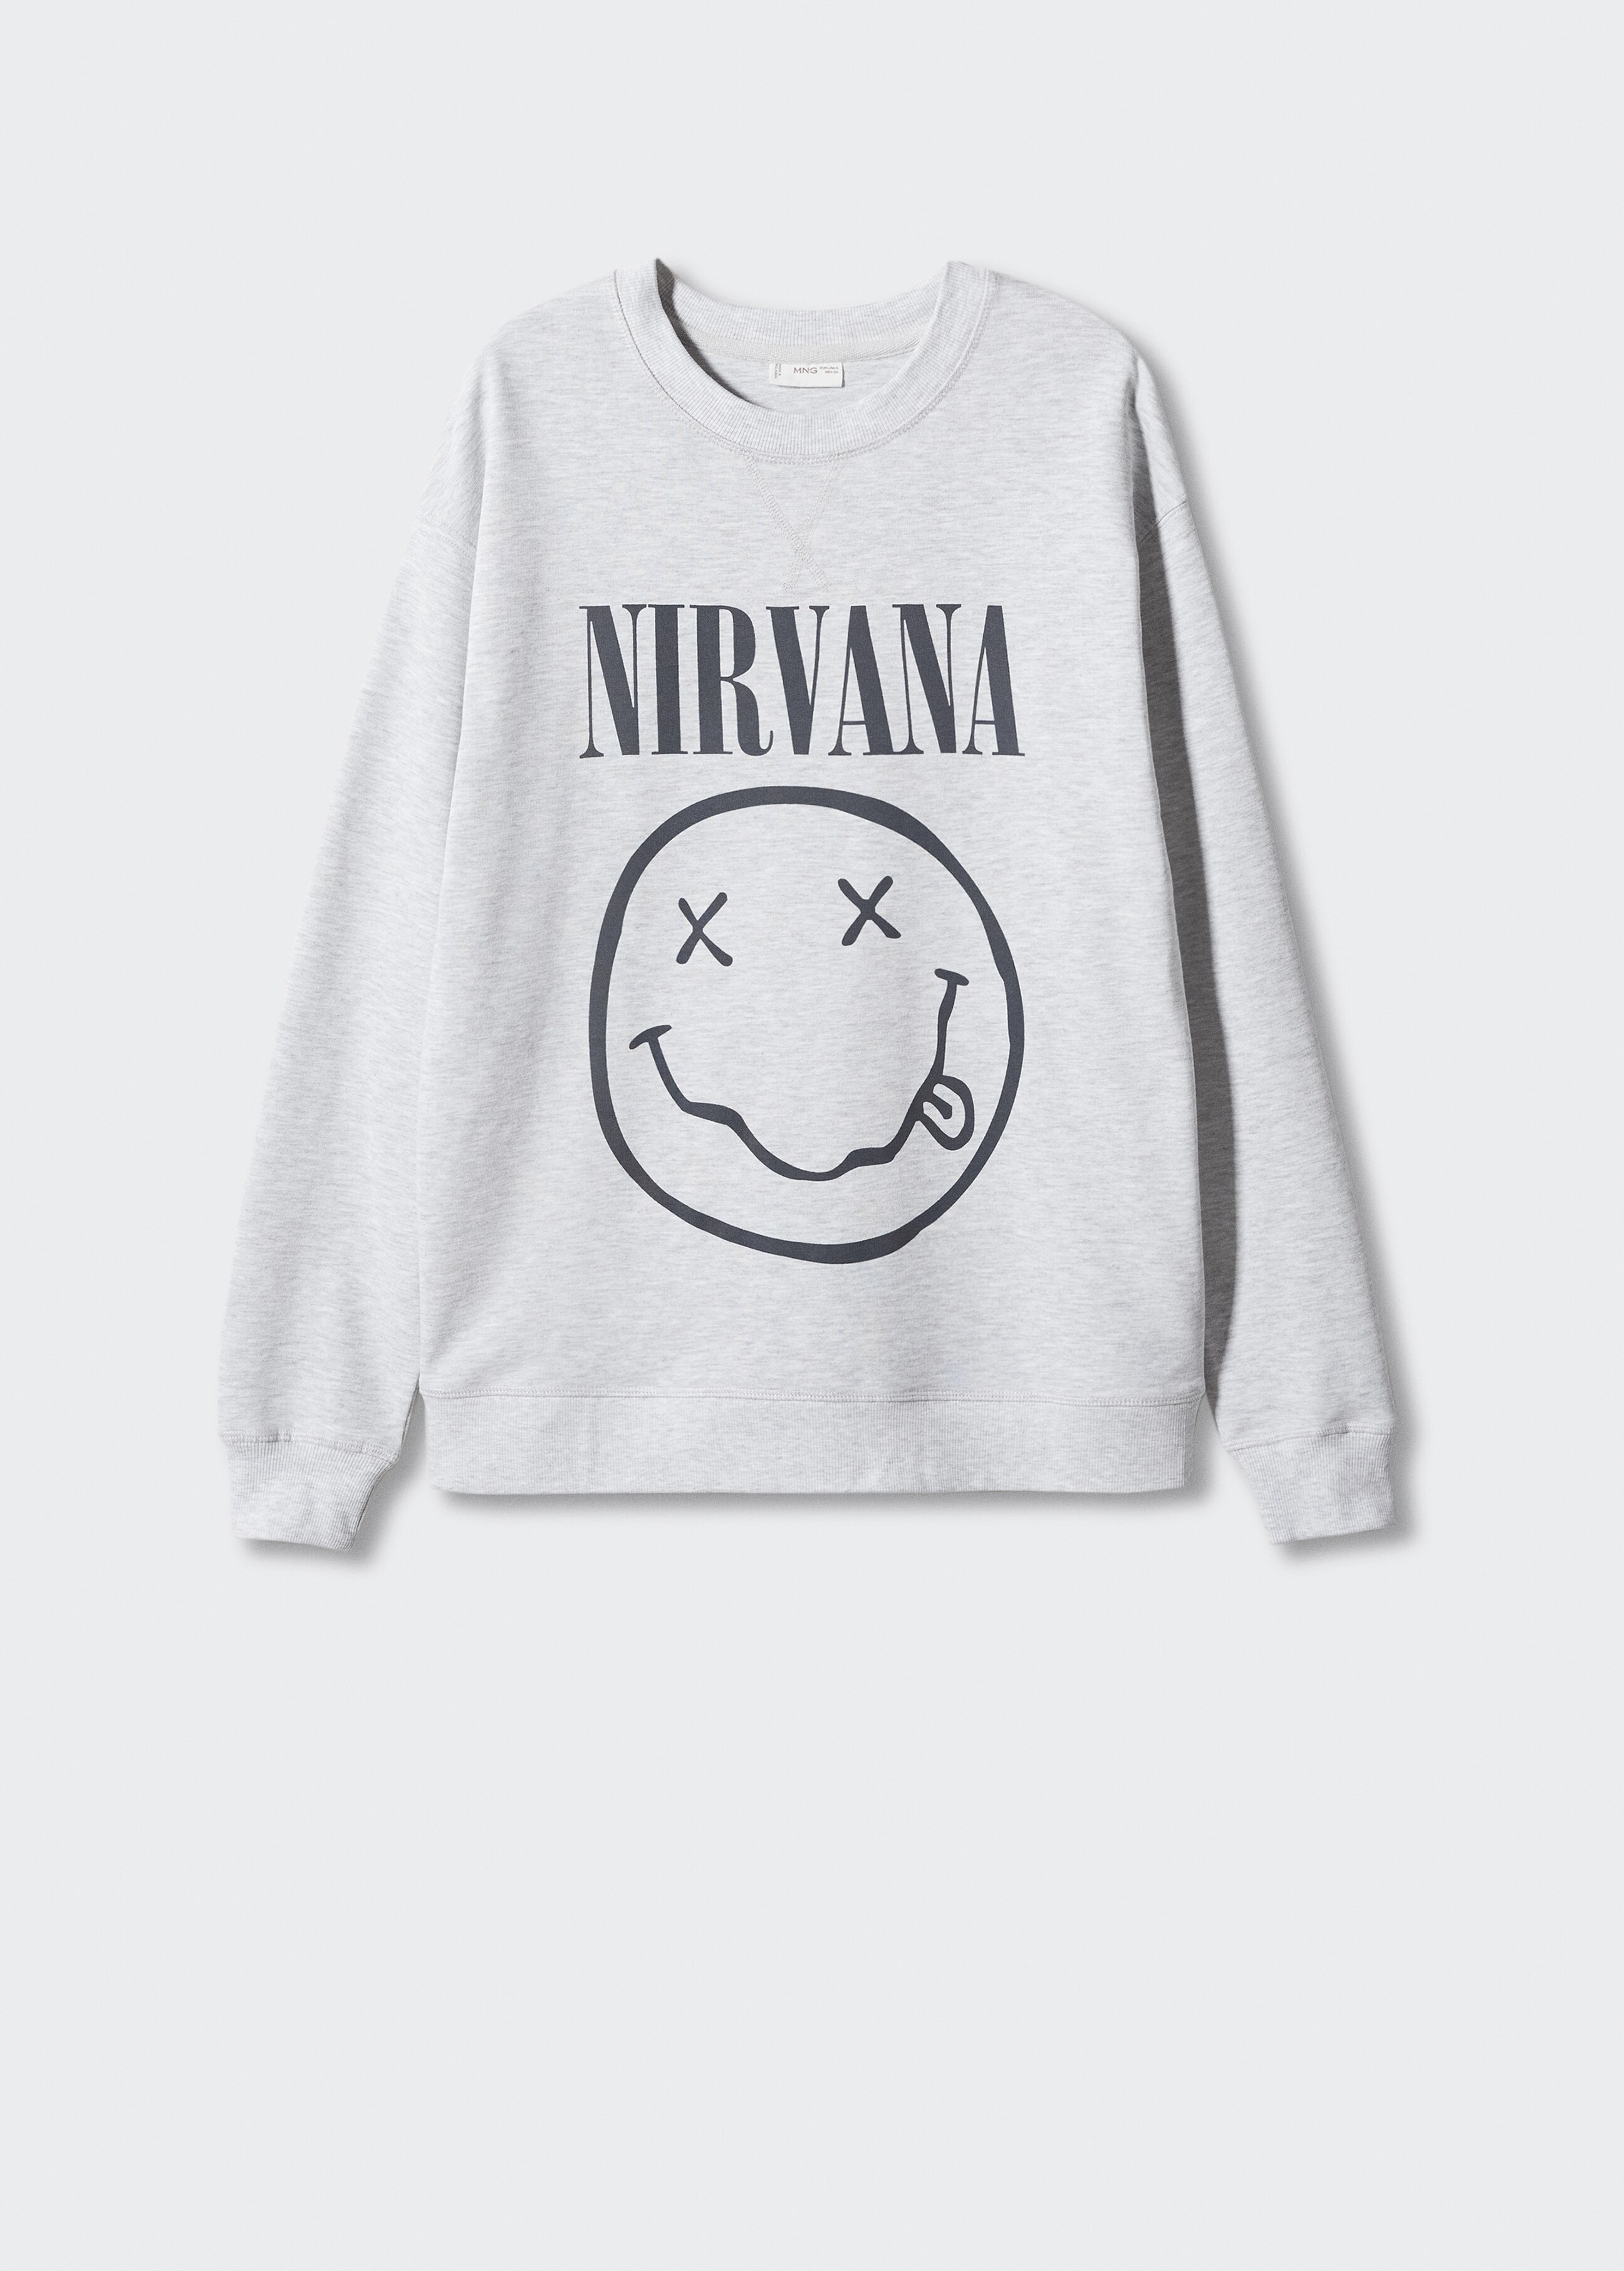 Nirvana sweatshirt - Article without model